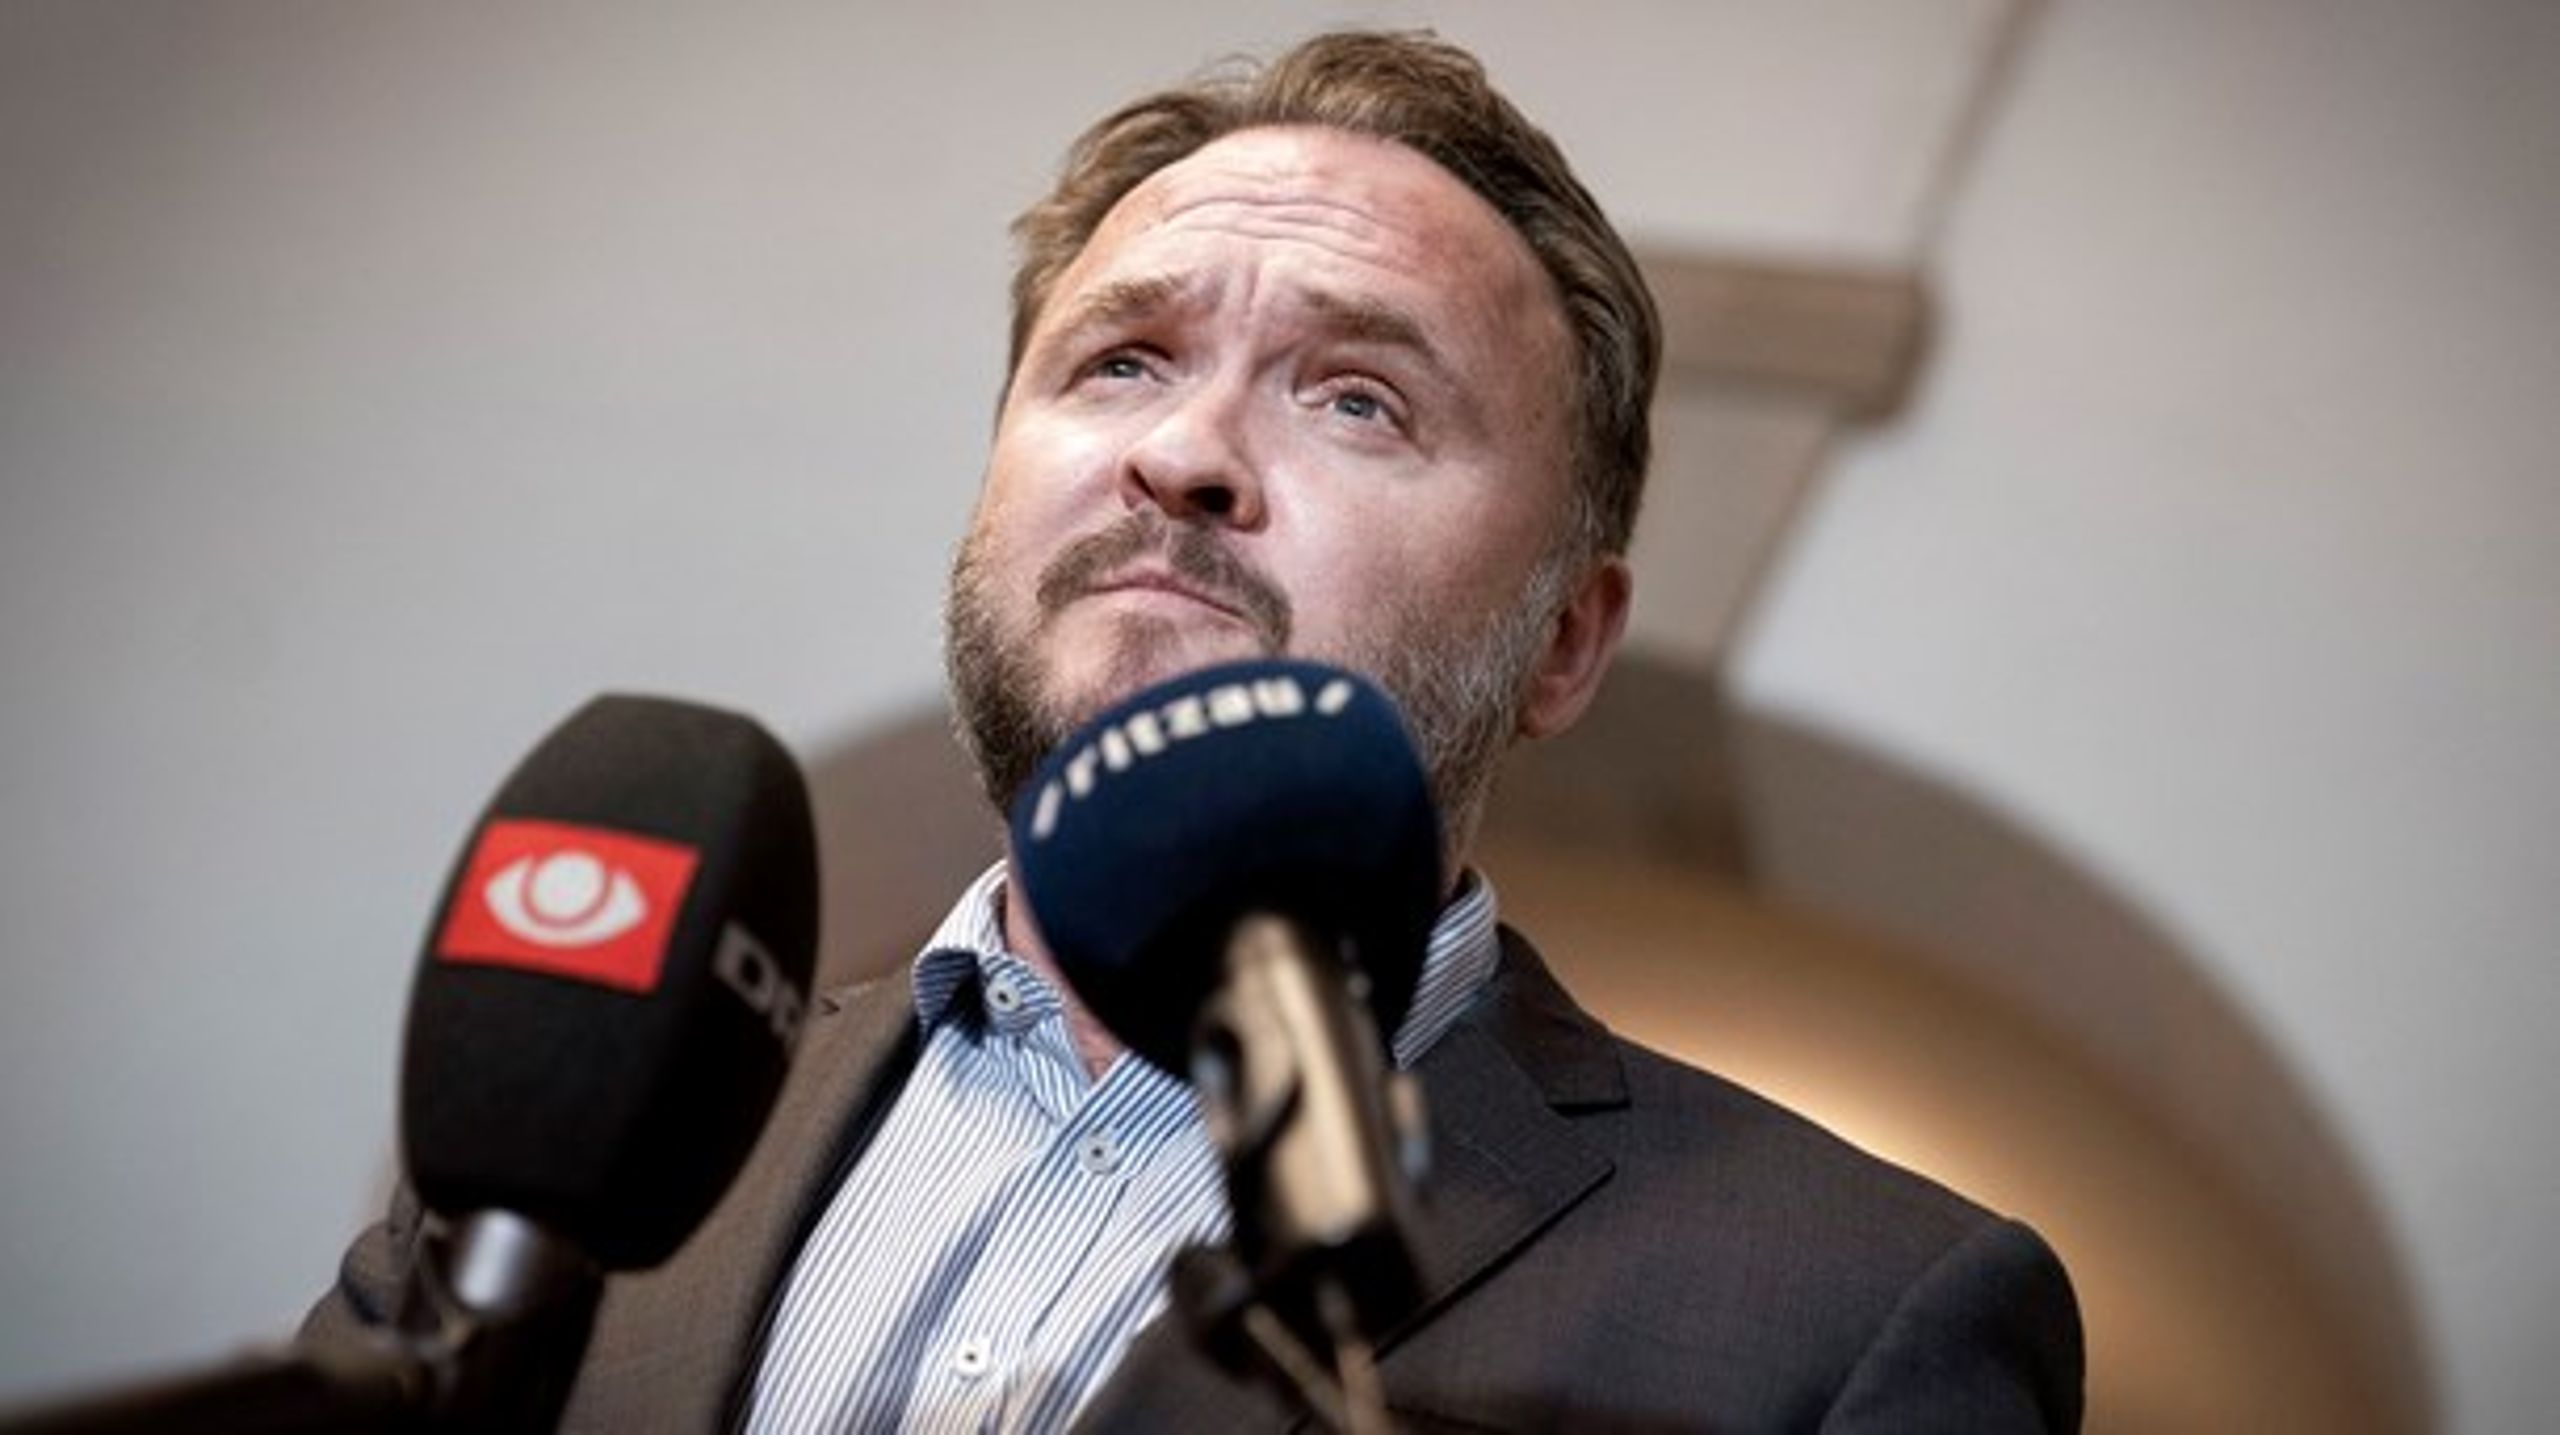 Regeringen har rejst debatten om en slutdato for det danske olieeventyr i Nordsøen. Men hvad mener regeringen selv? Det har klimaminister Dan Jørgensen (S) ikke givet noget bud på endnu.